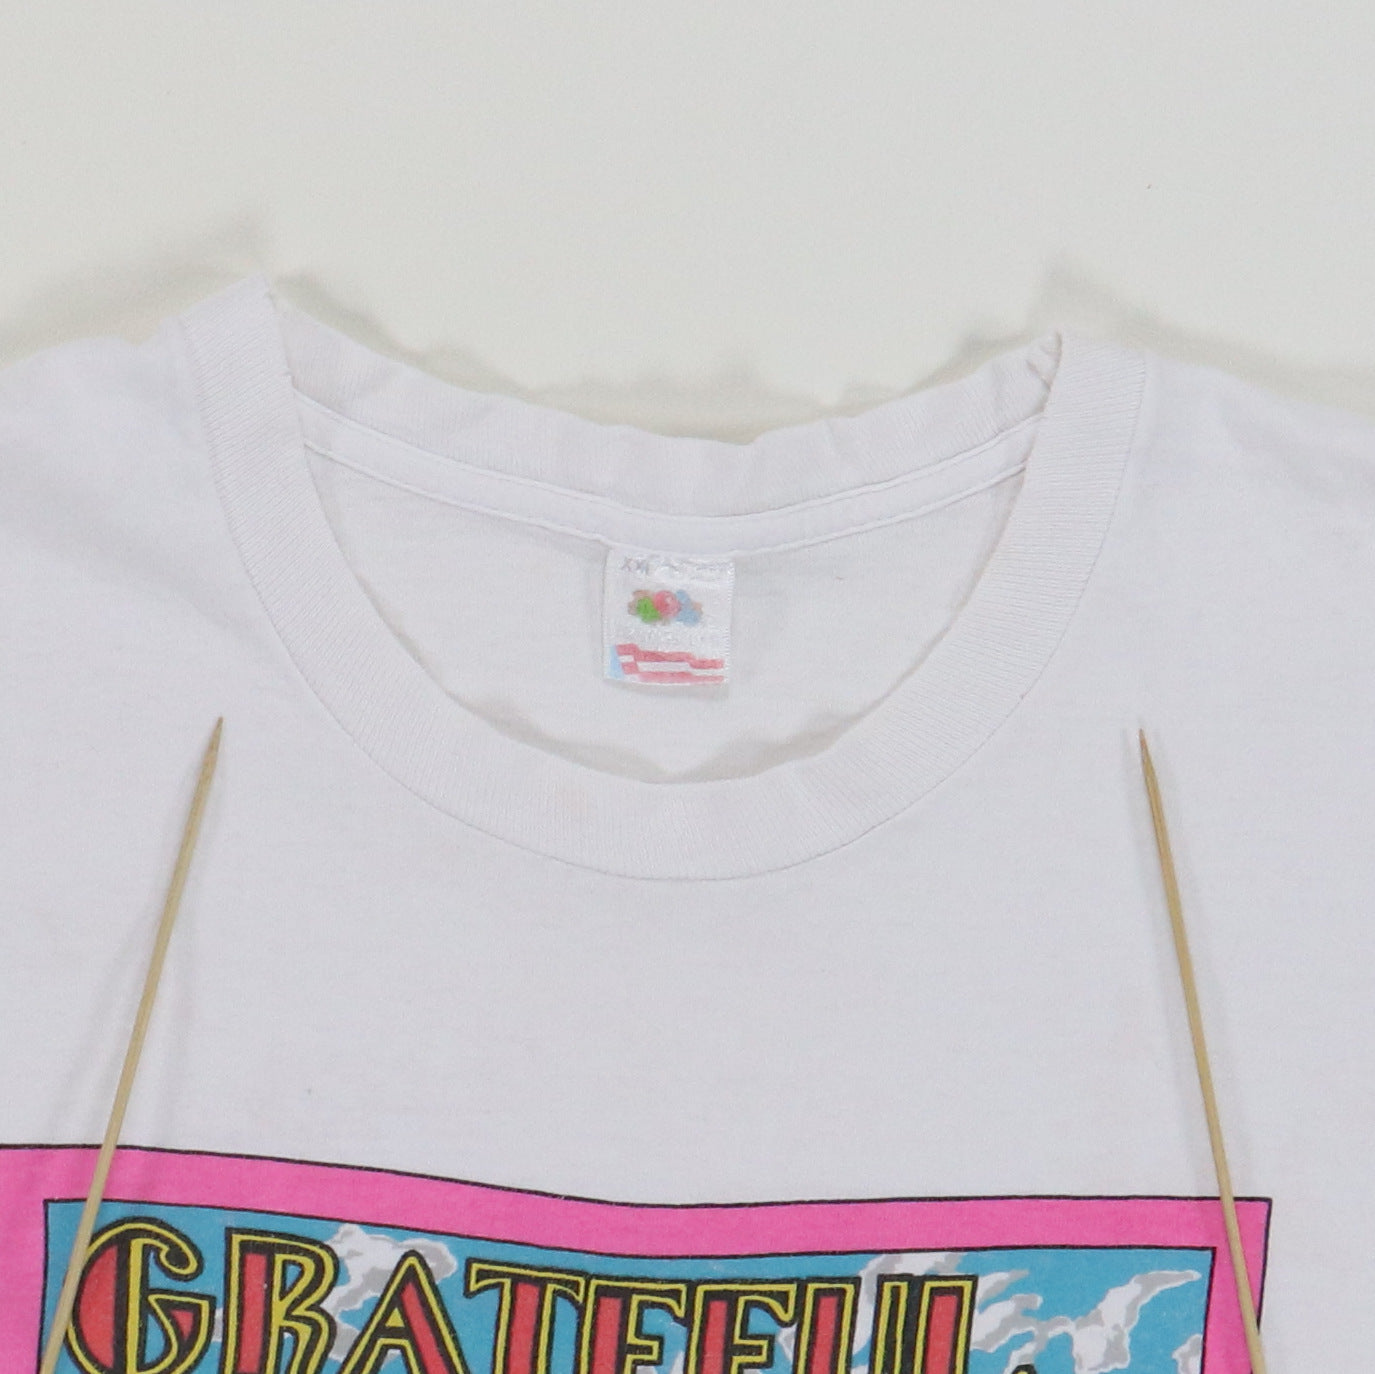 1994 Grateful Dead Summer Tour Shirt